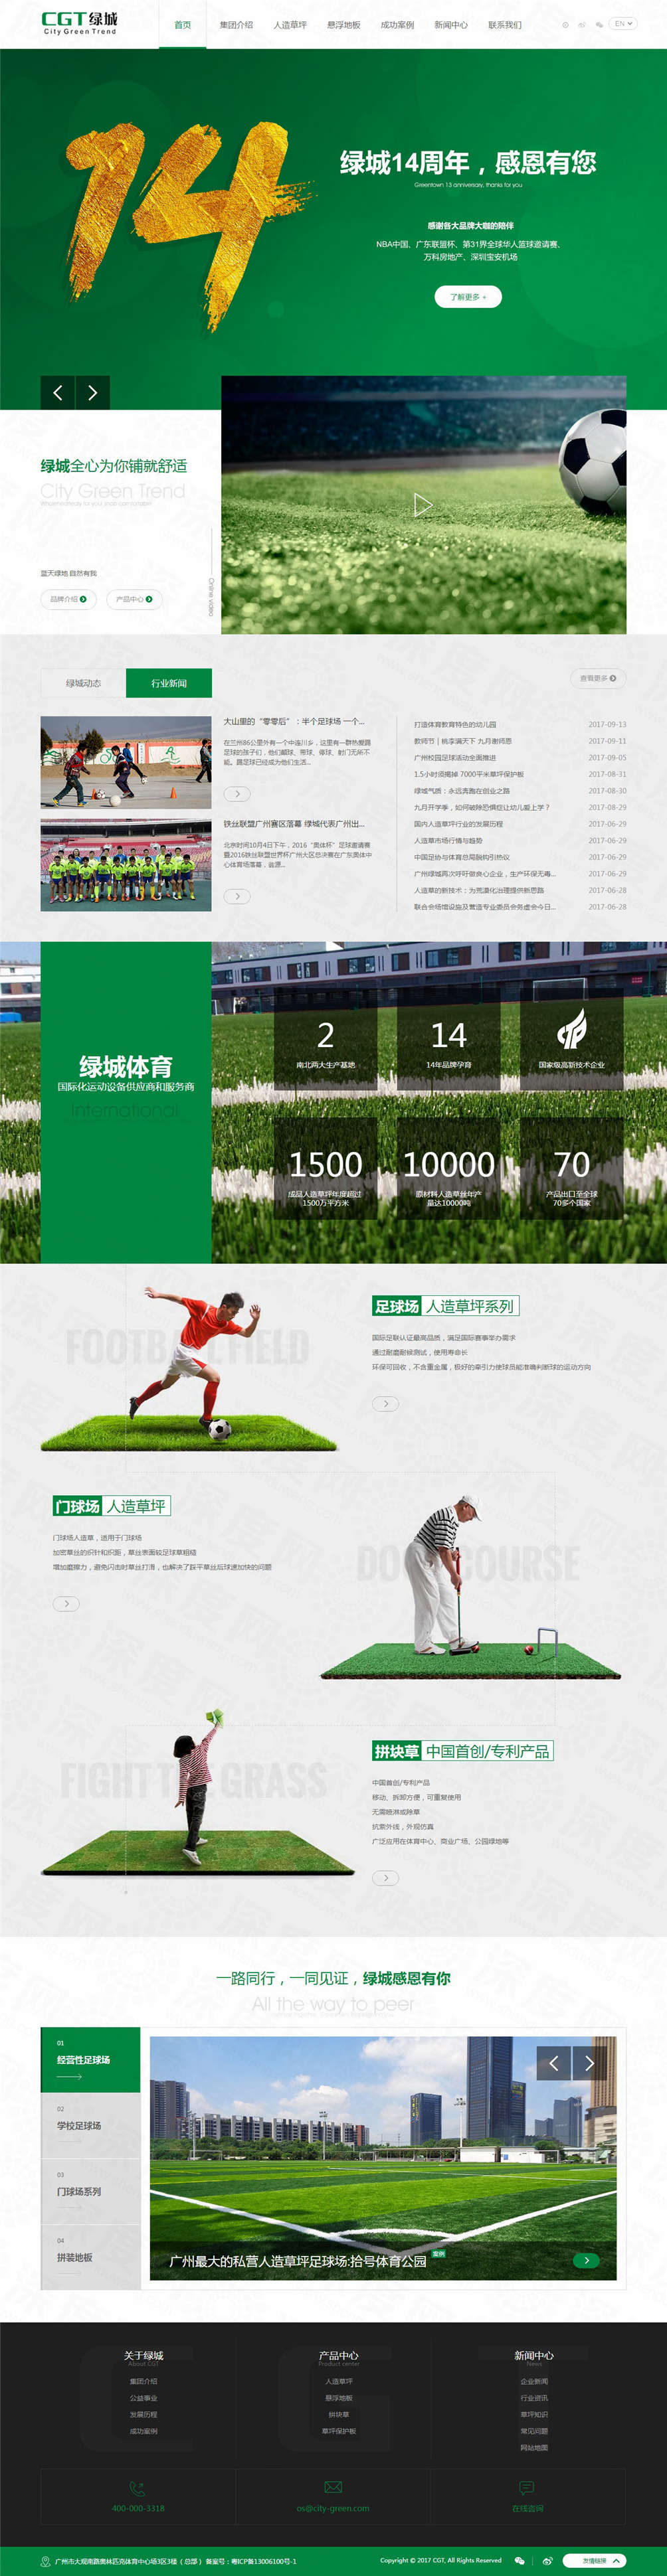 广东绿城体育品牌网站建设案例